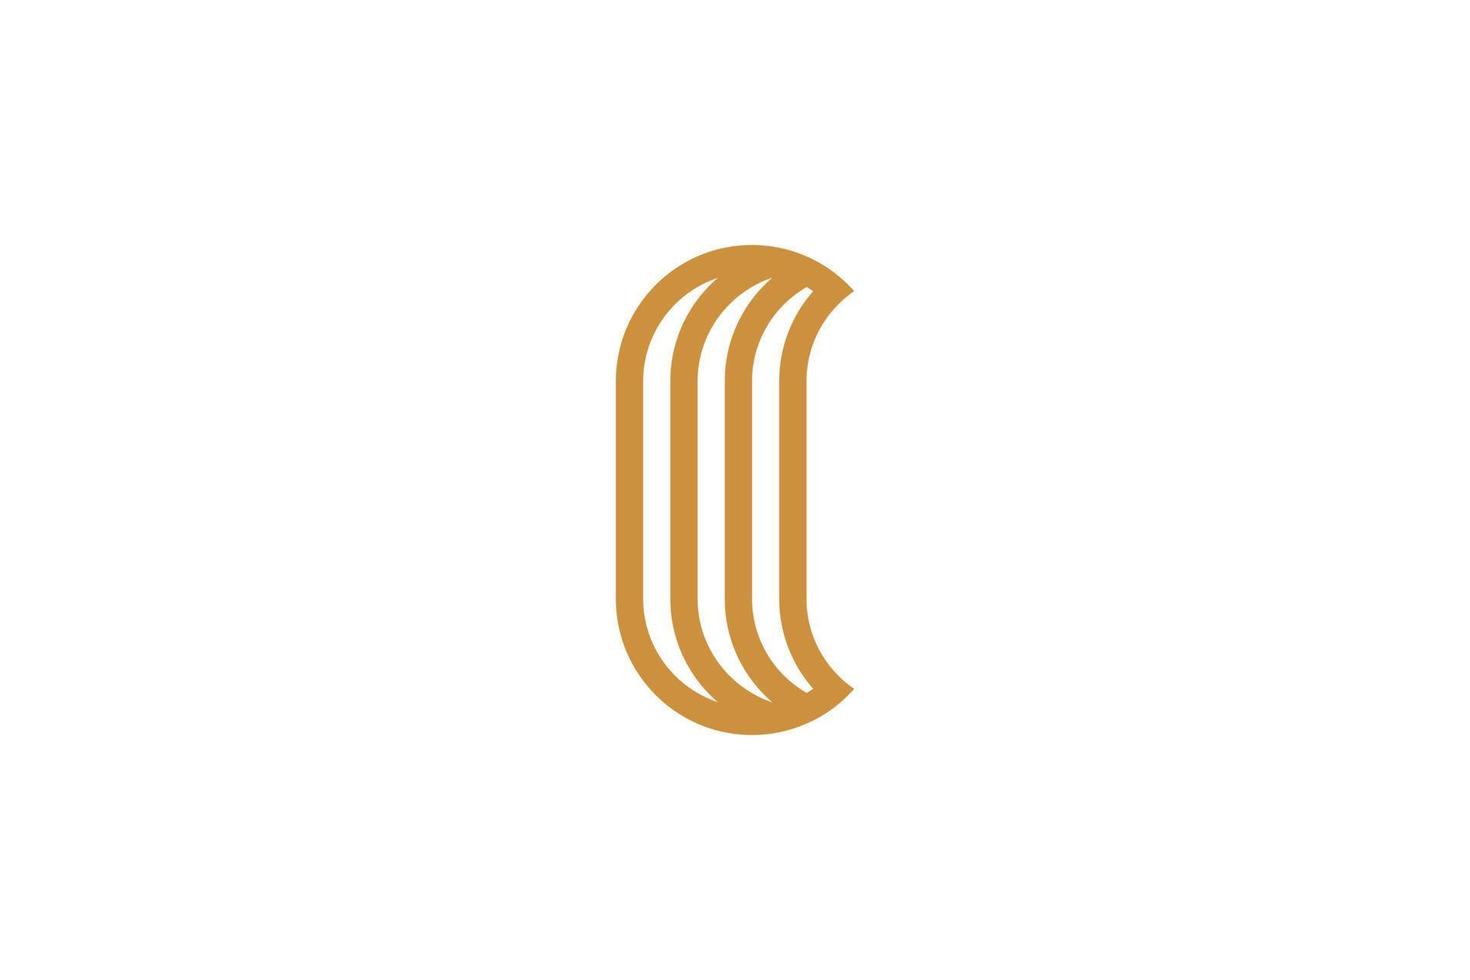 abstract luxe monoline brief O logo vector